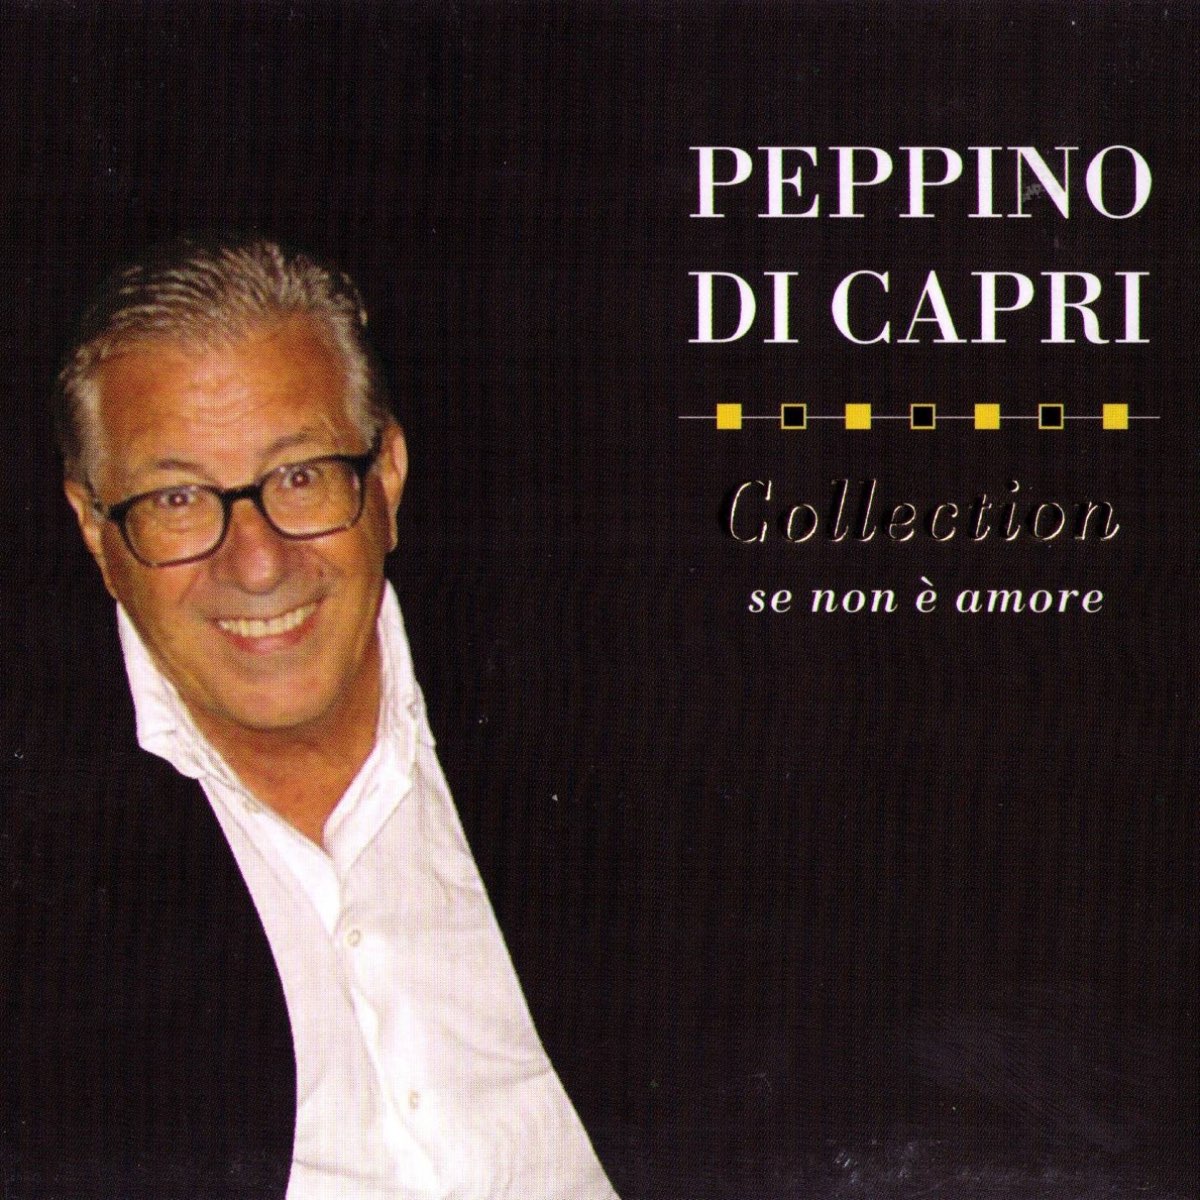 Peppino. Capri Songs. Peppino PNG.